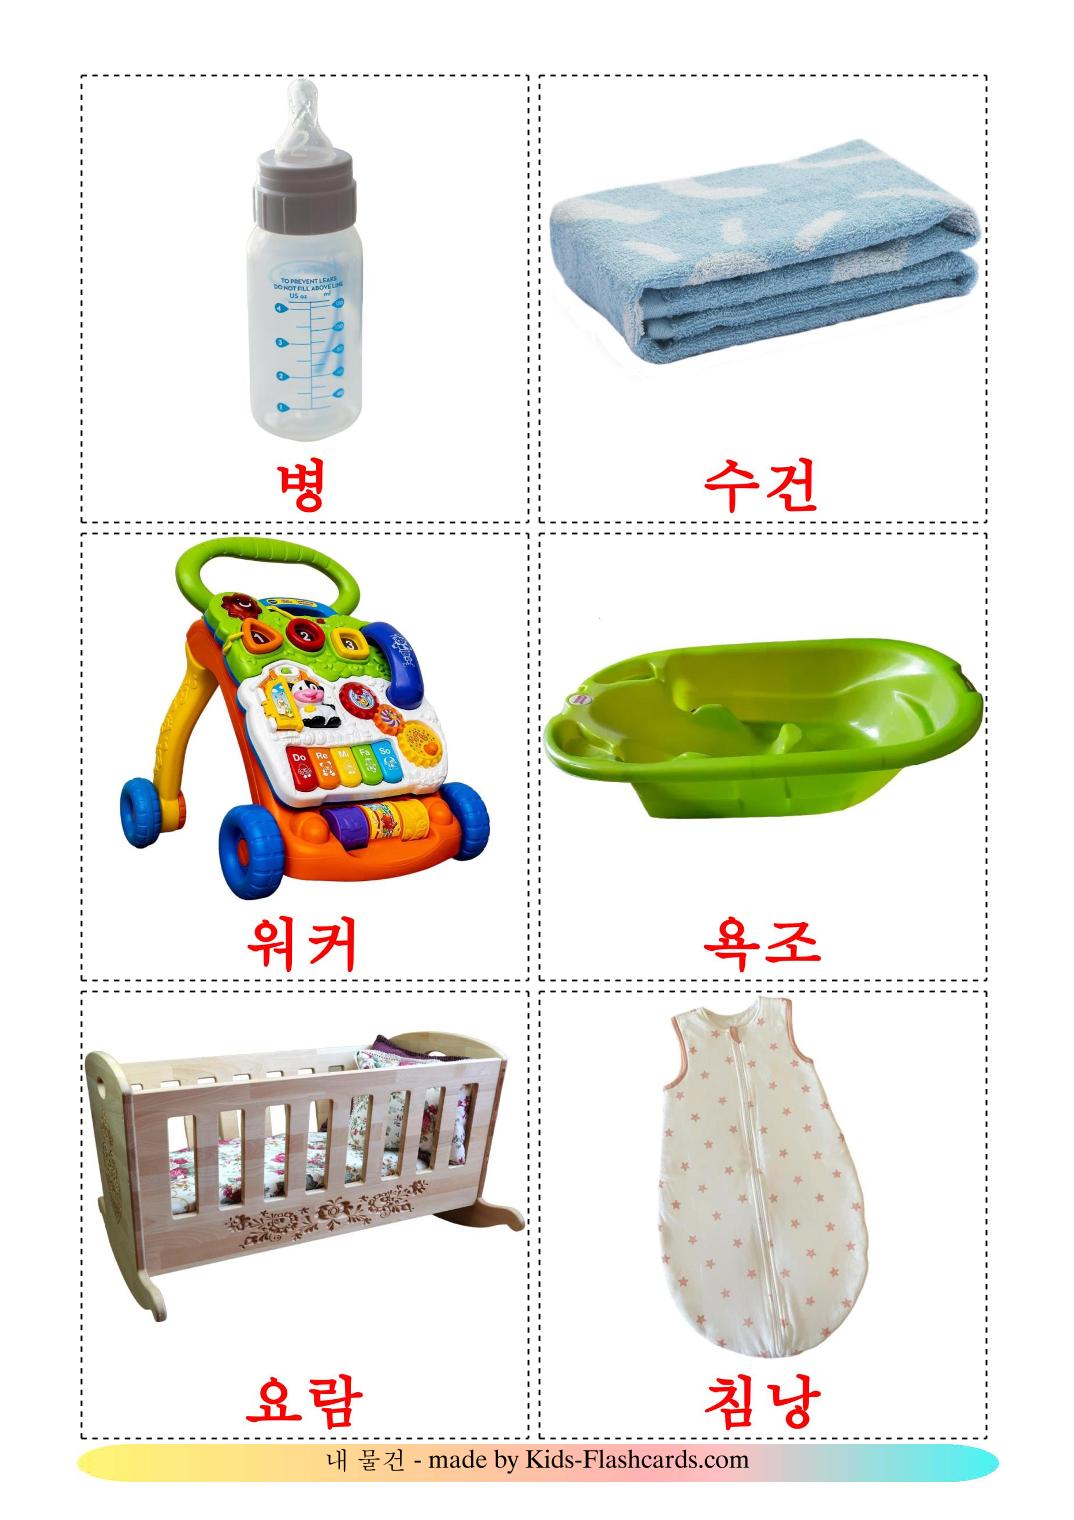 Coisas de Bebê - 19 Flashcards coreanoes gratuitos para impressão